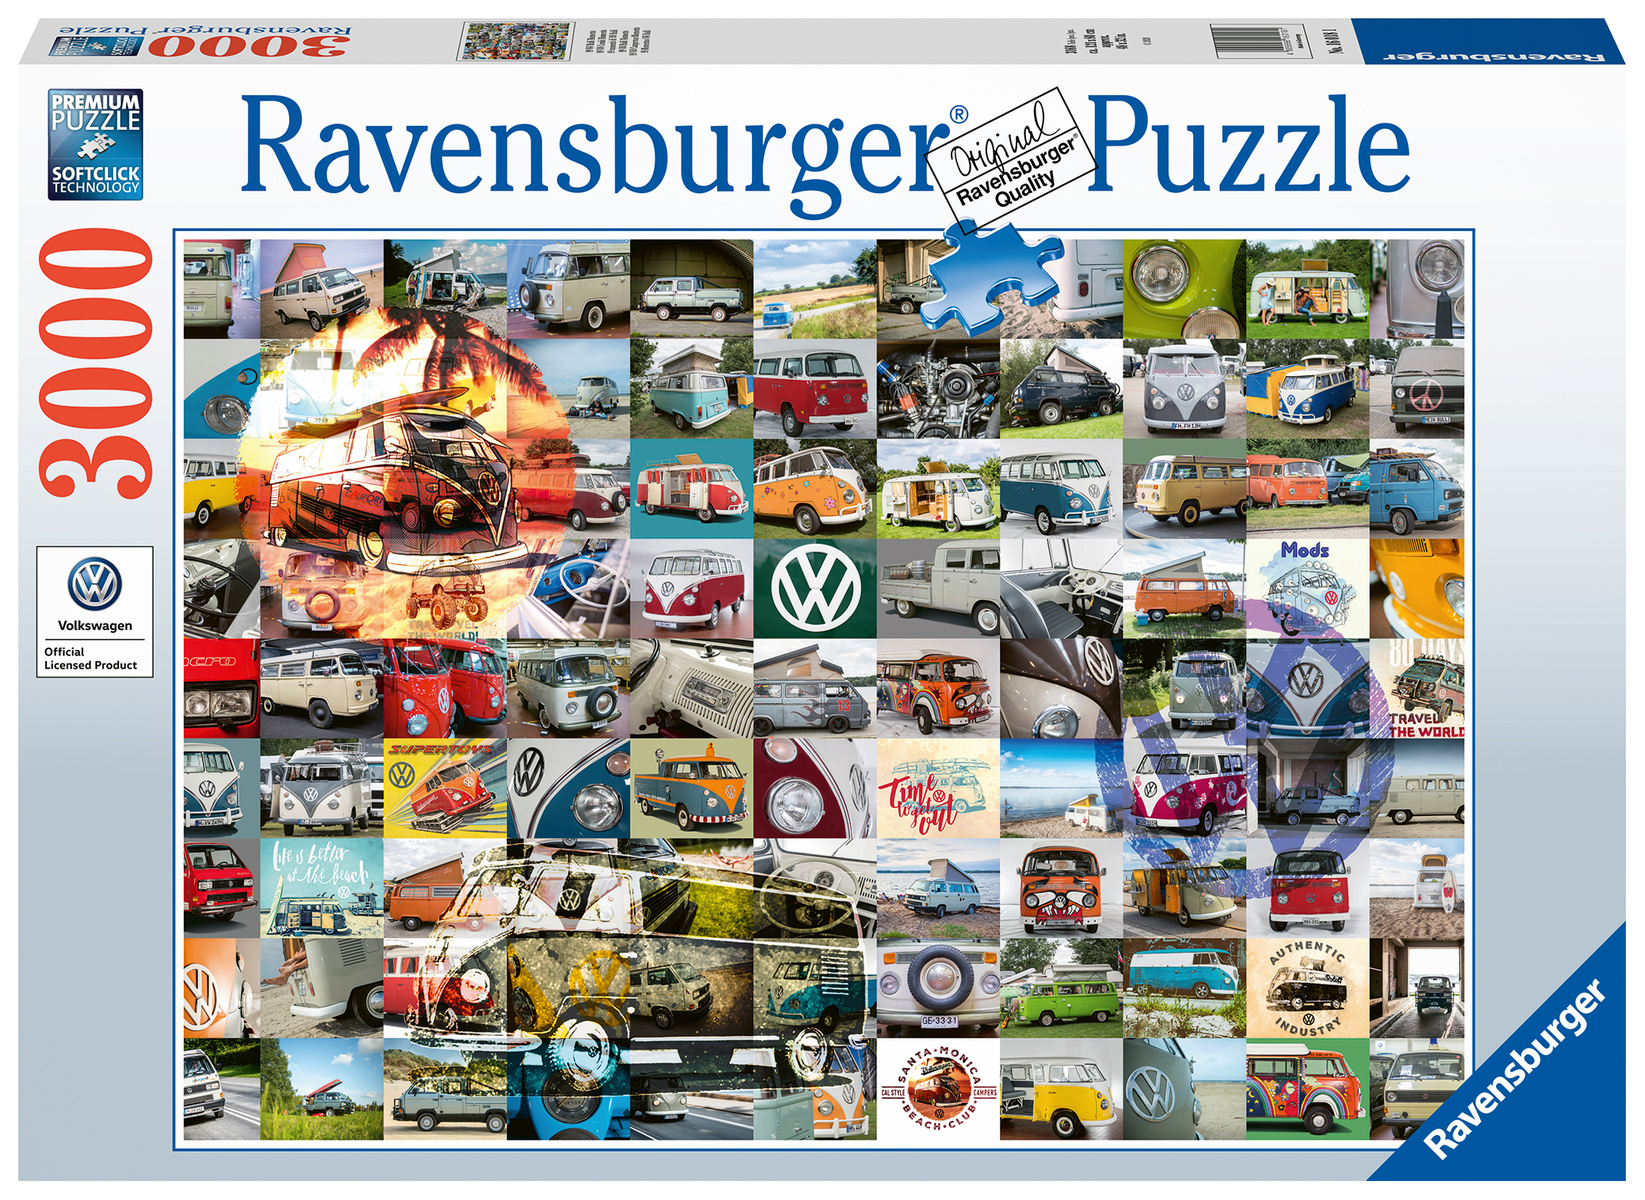 Lucky Notitie Terugbetaling Voordelig Ravensburger puzzels kopen? Brede keuze! - Puzzels123